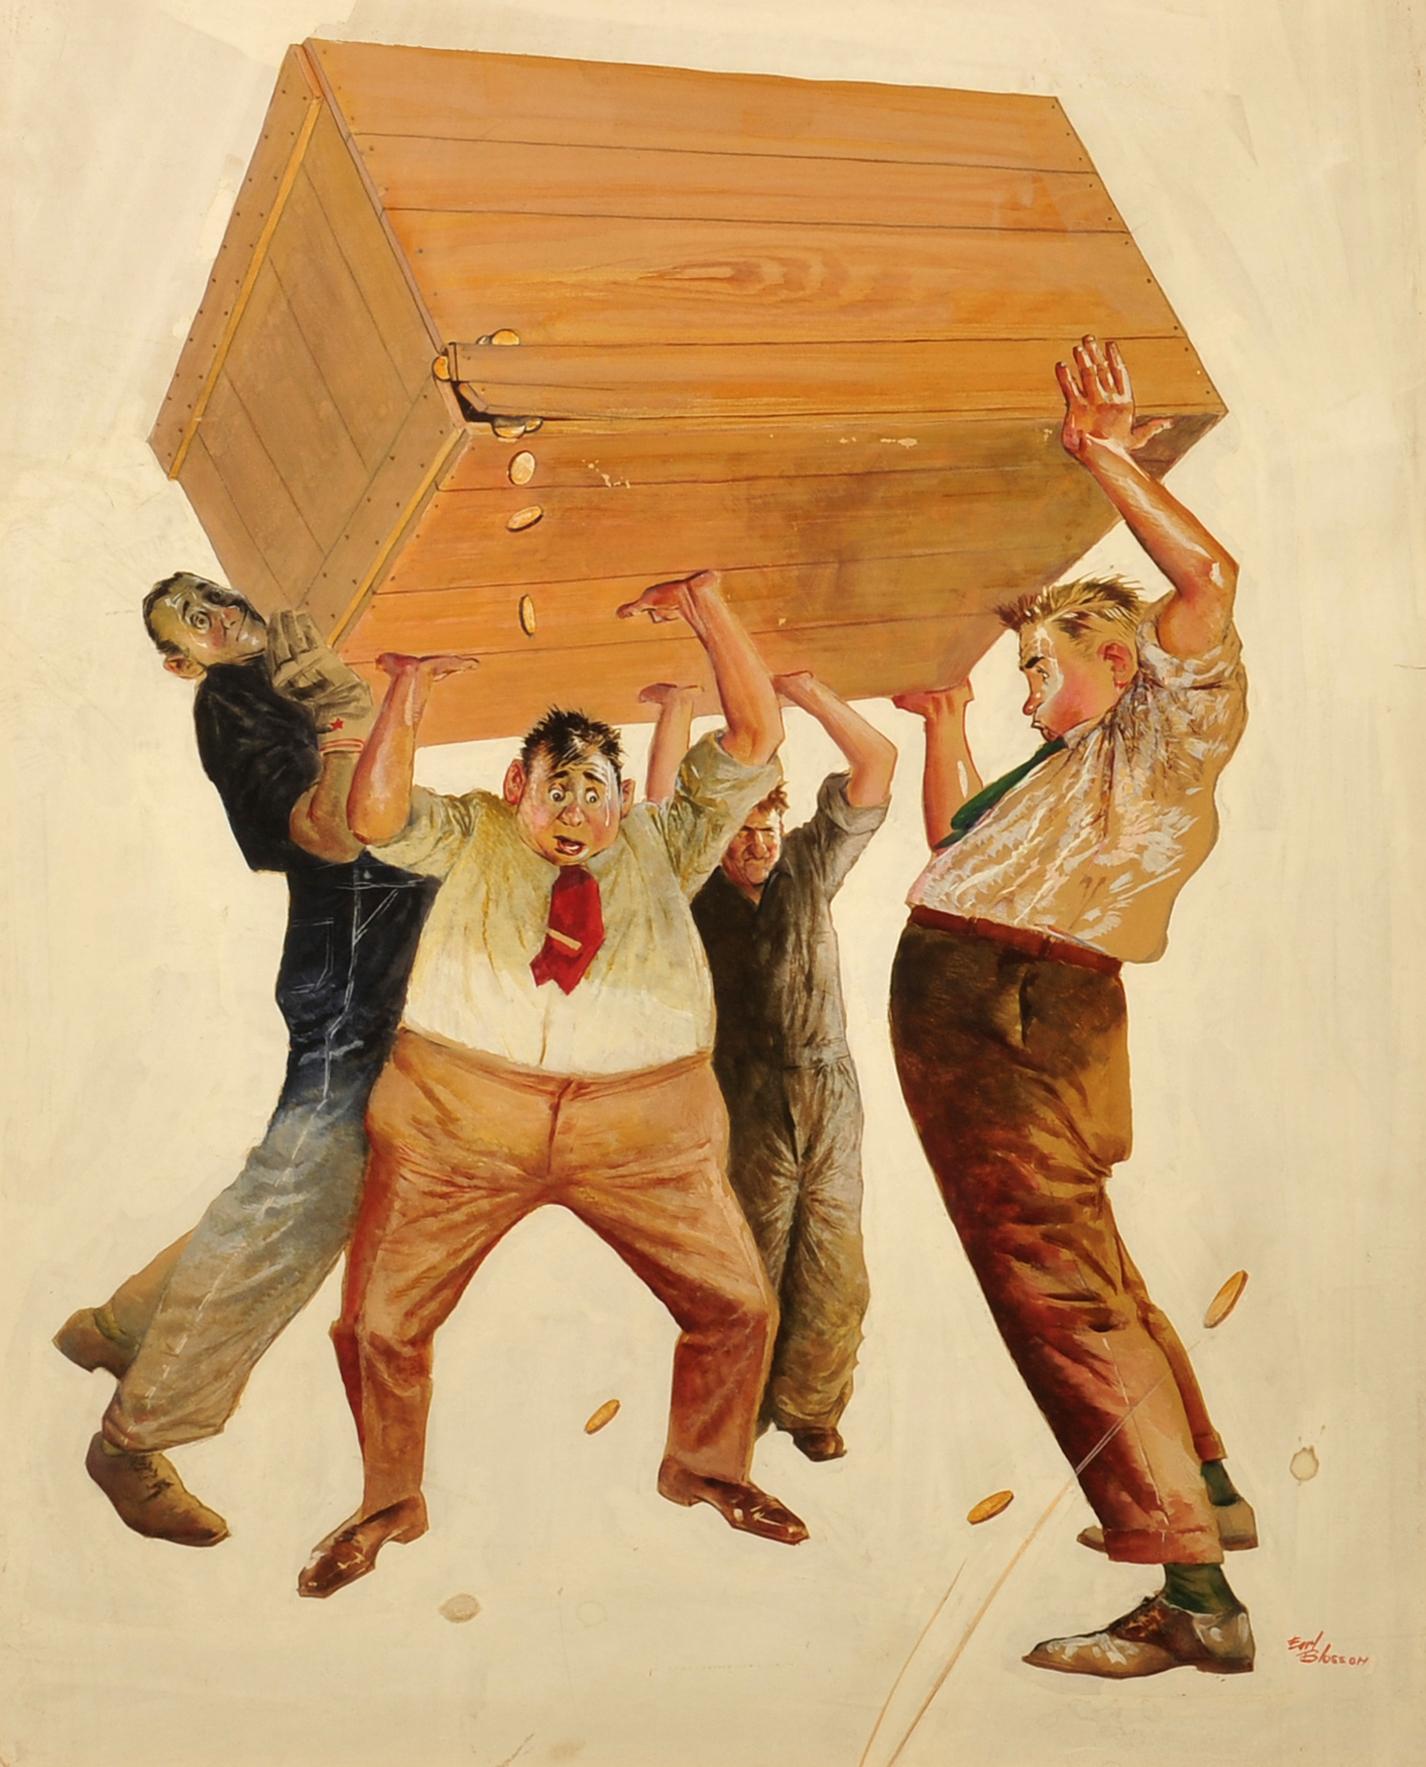 Men Holding Up a Box - Men tenant une boîte